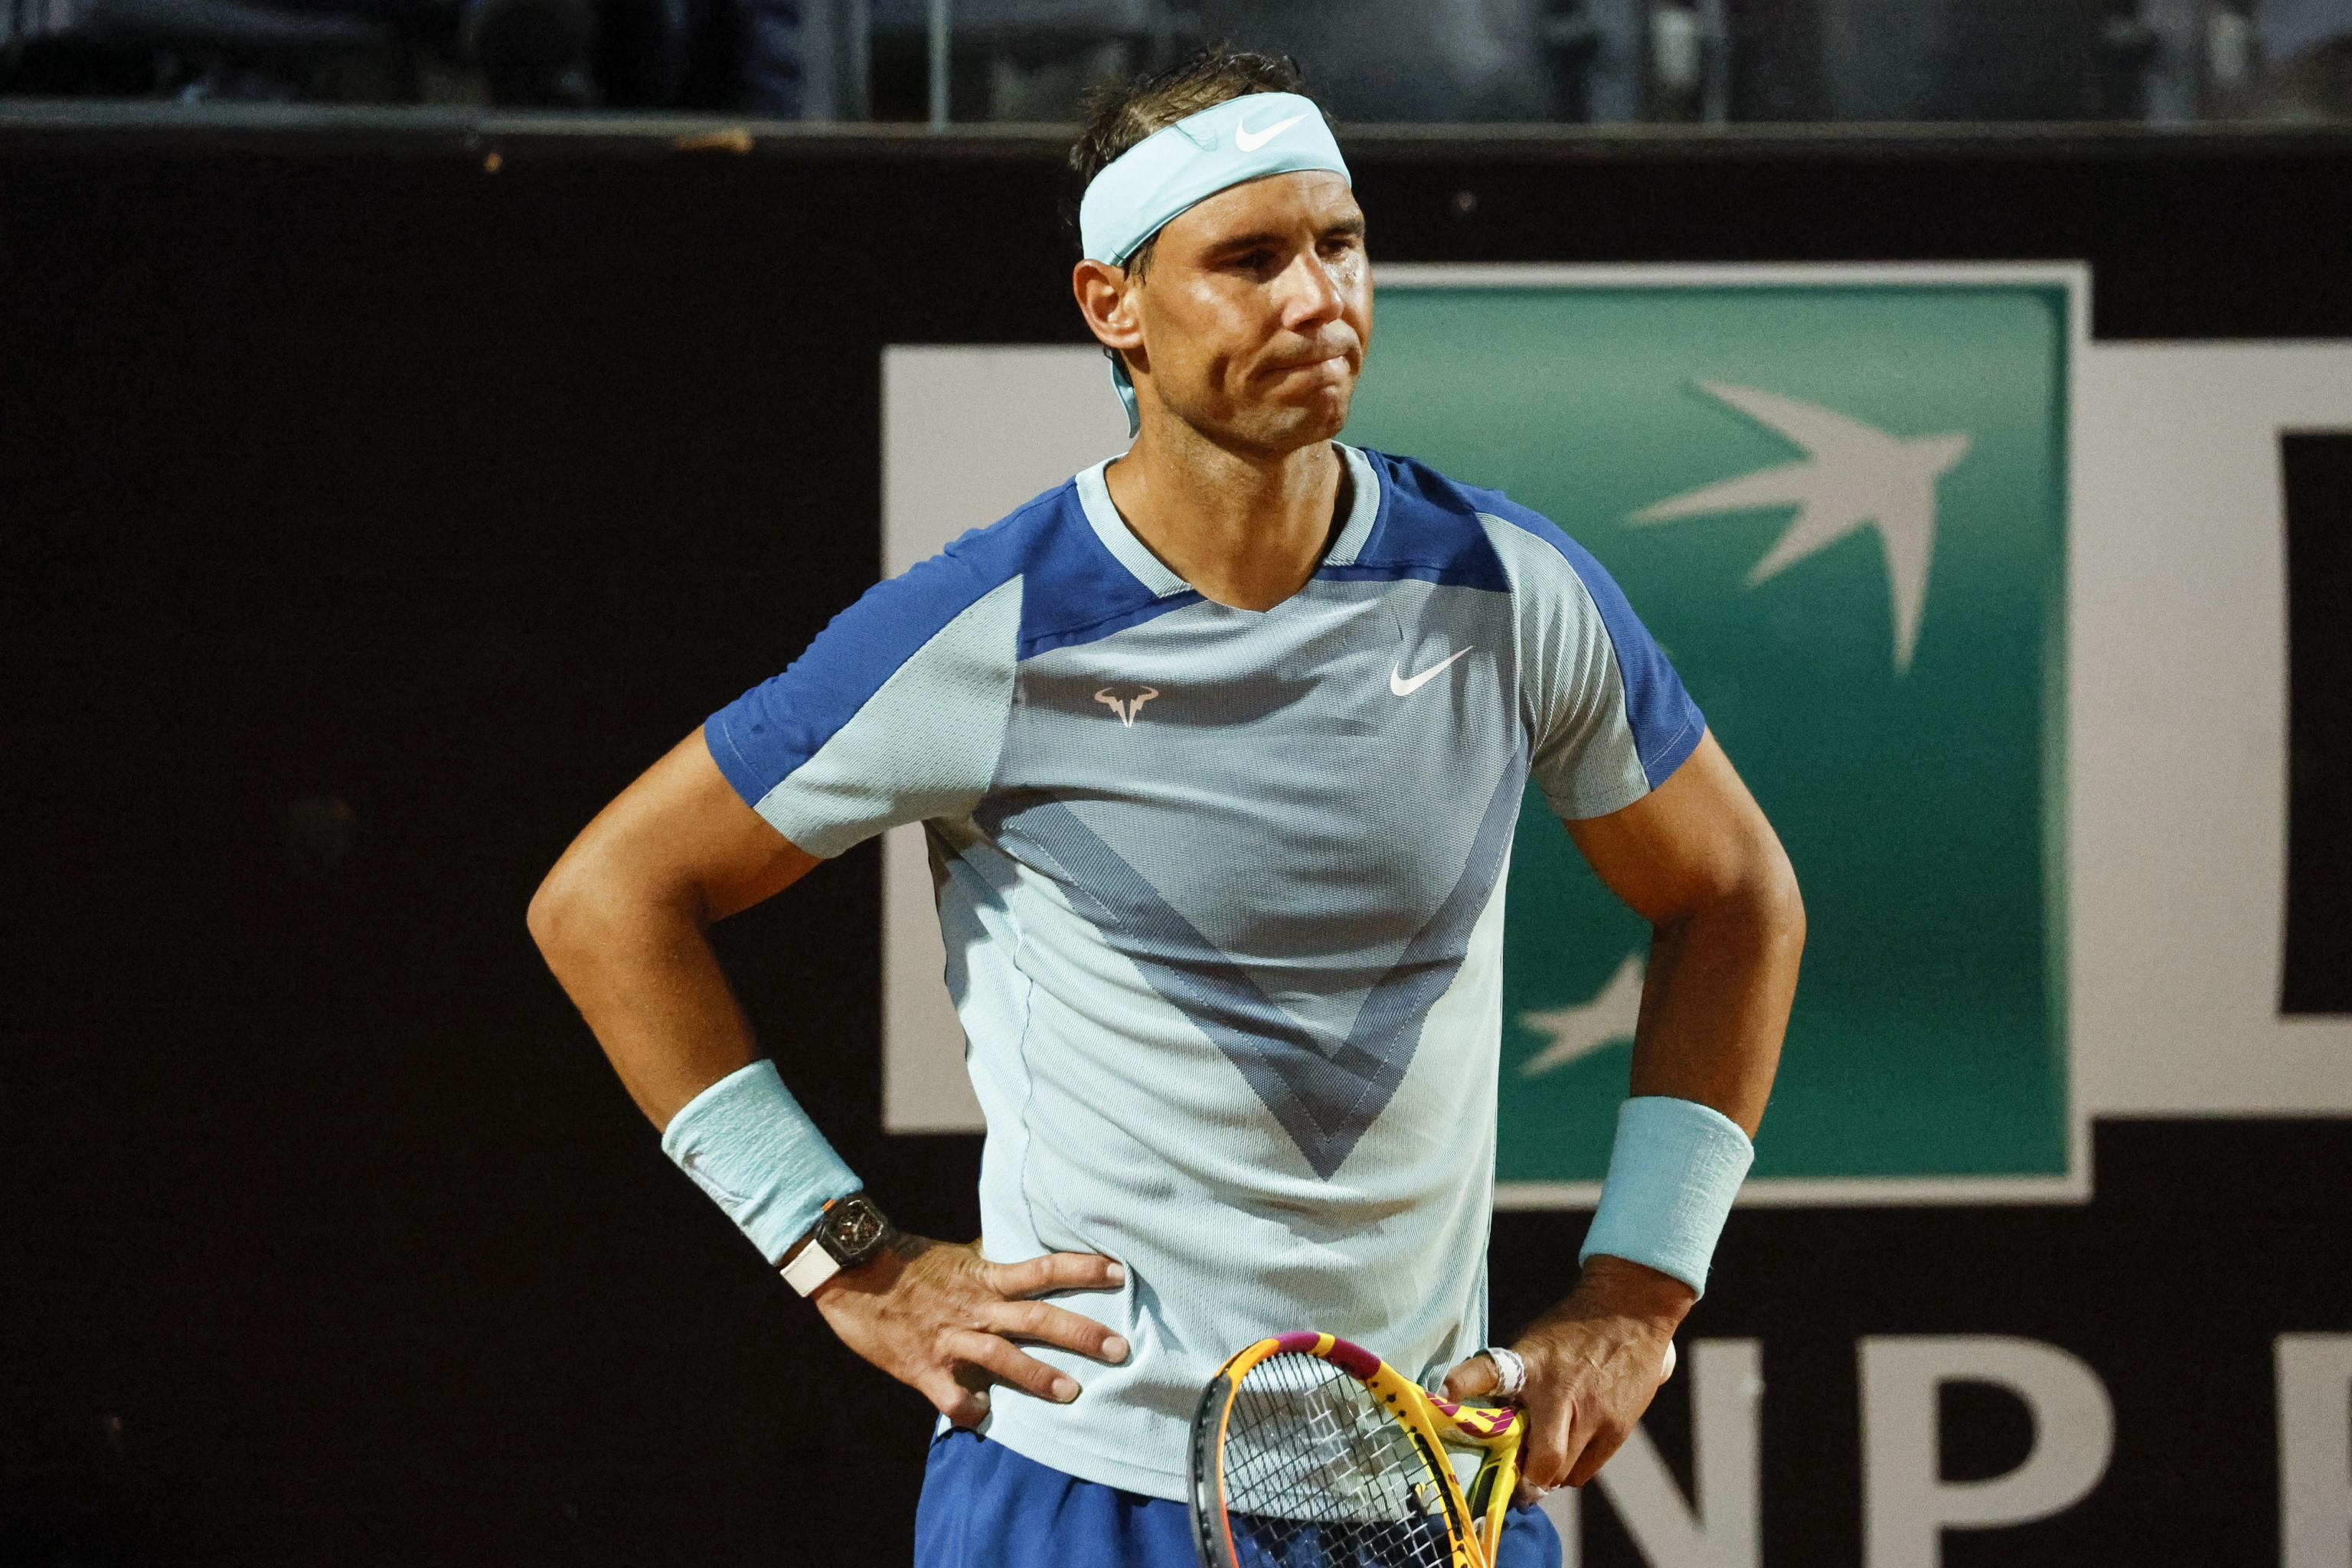 Rafa Nadal after losing to Shapovalov in Rome.